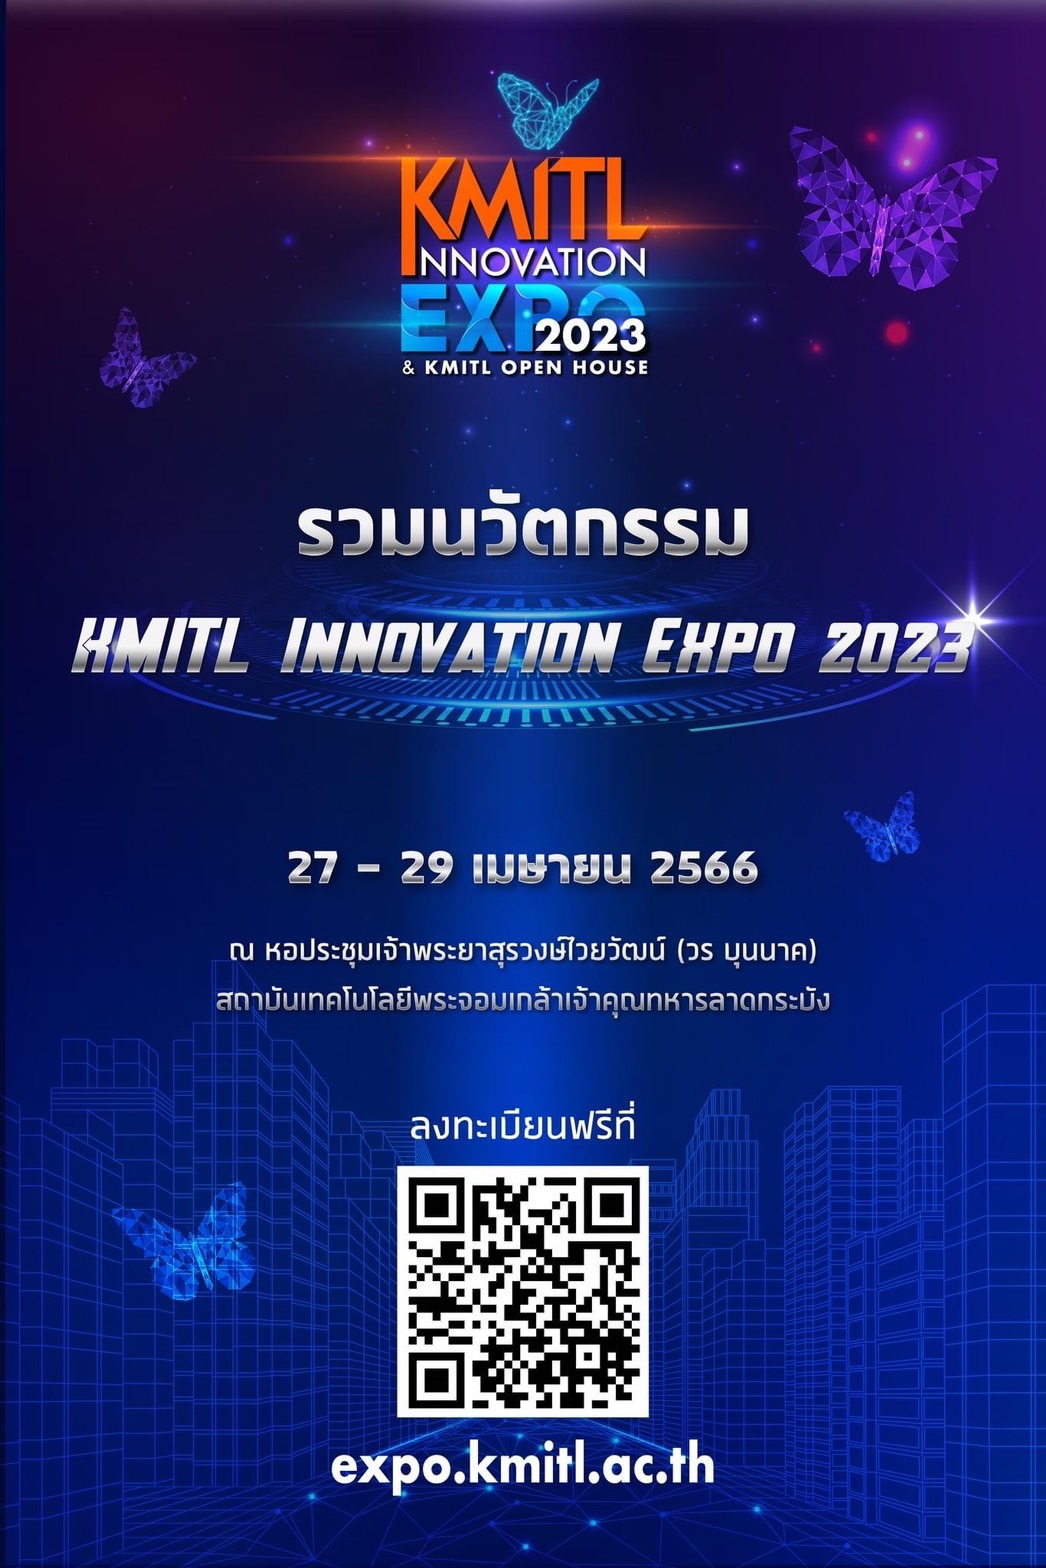 KMITL Innovation Expo 2023